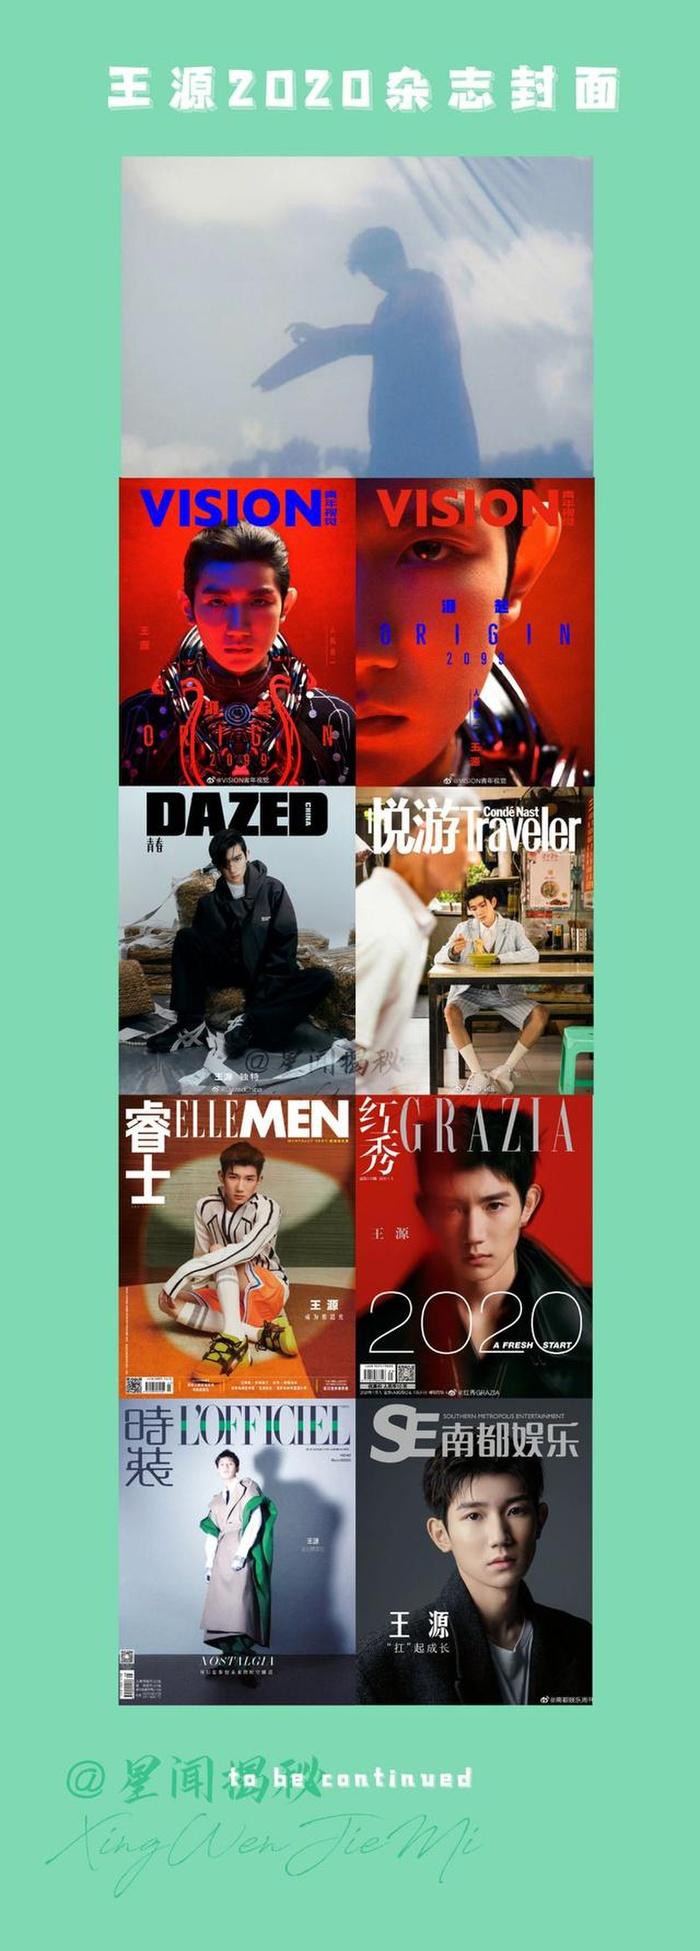 Vương Nguyên tiếp tục gây thương nhớ với bộ ảnh tạp chí thứ tám trong năm 2020 Ảnh 1